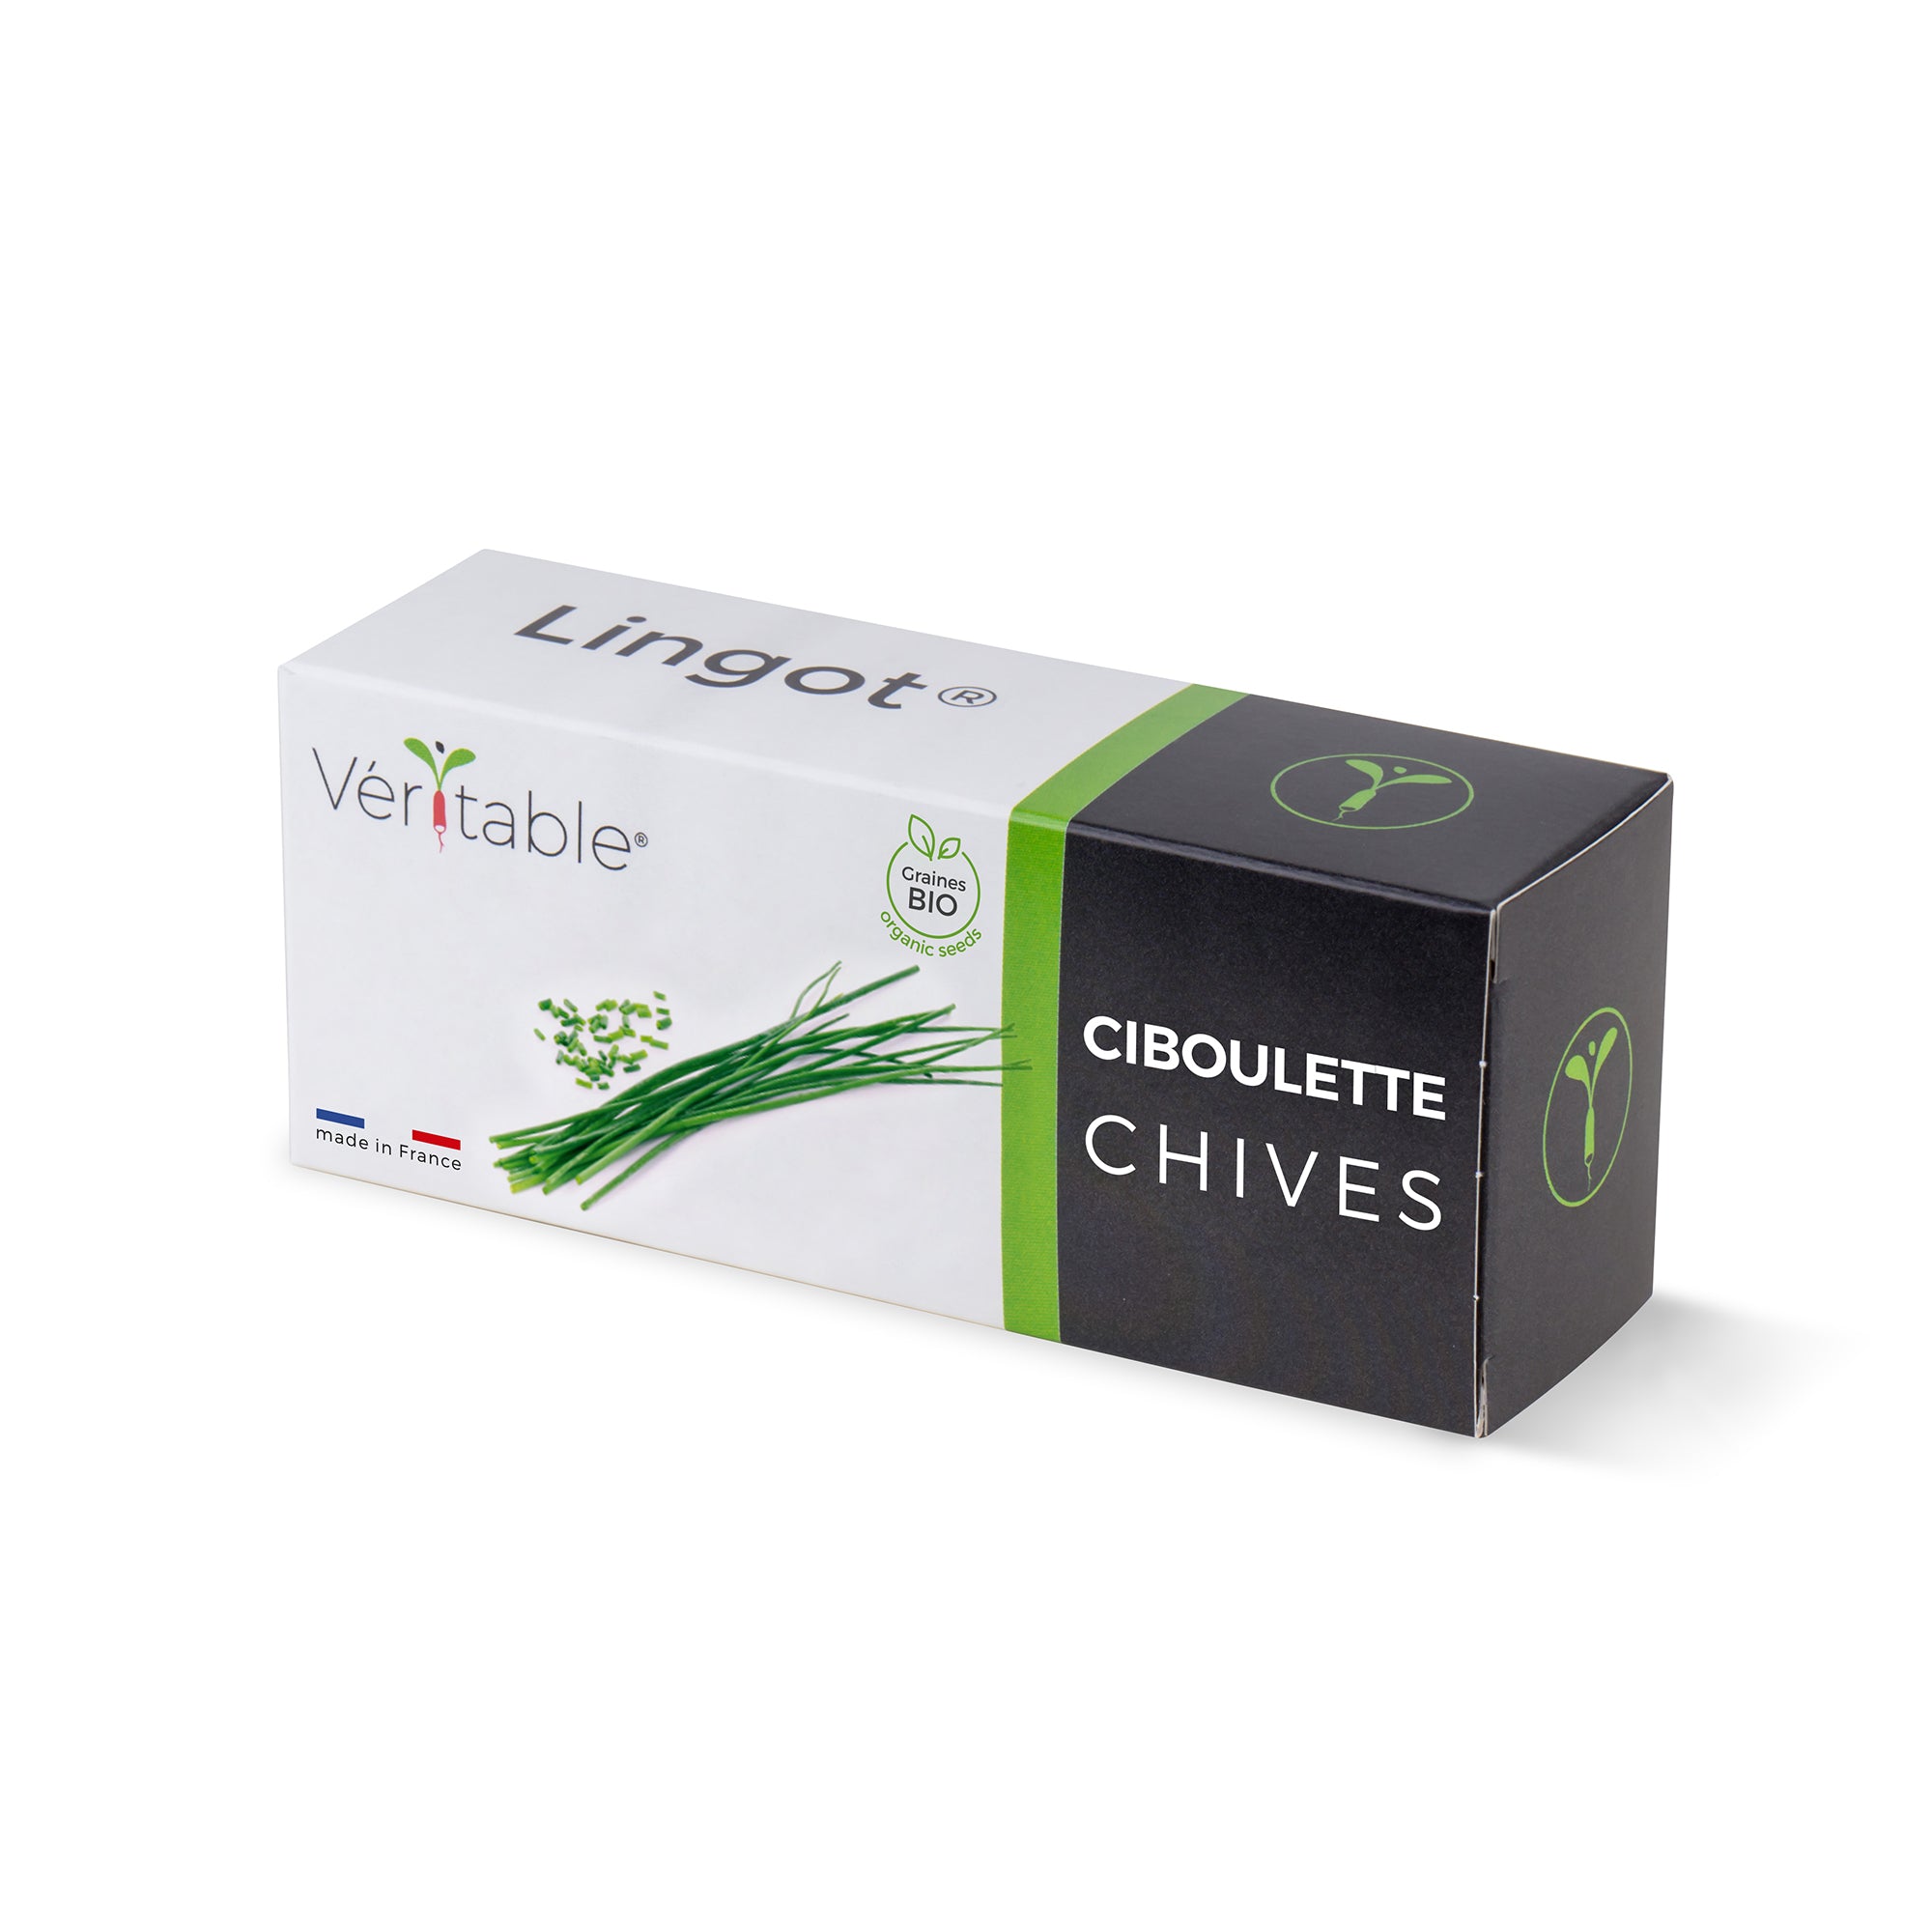 Chives Lingot® – Véritable SAS